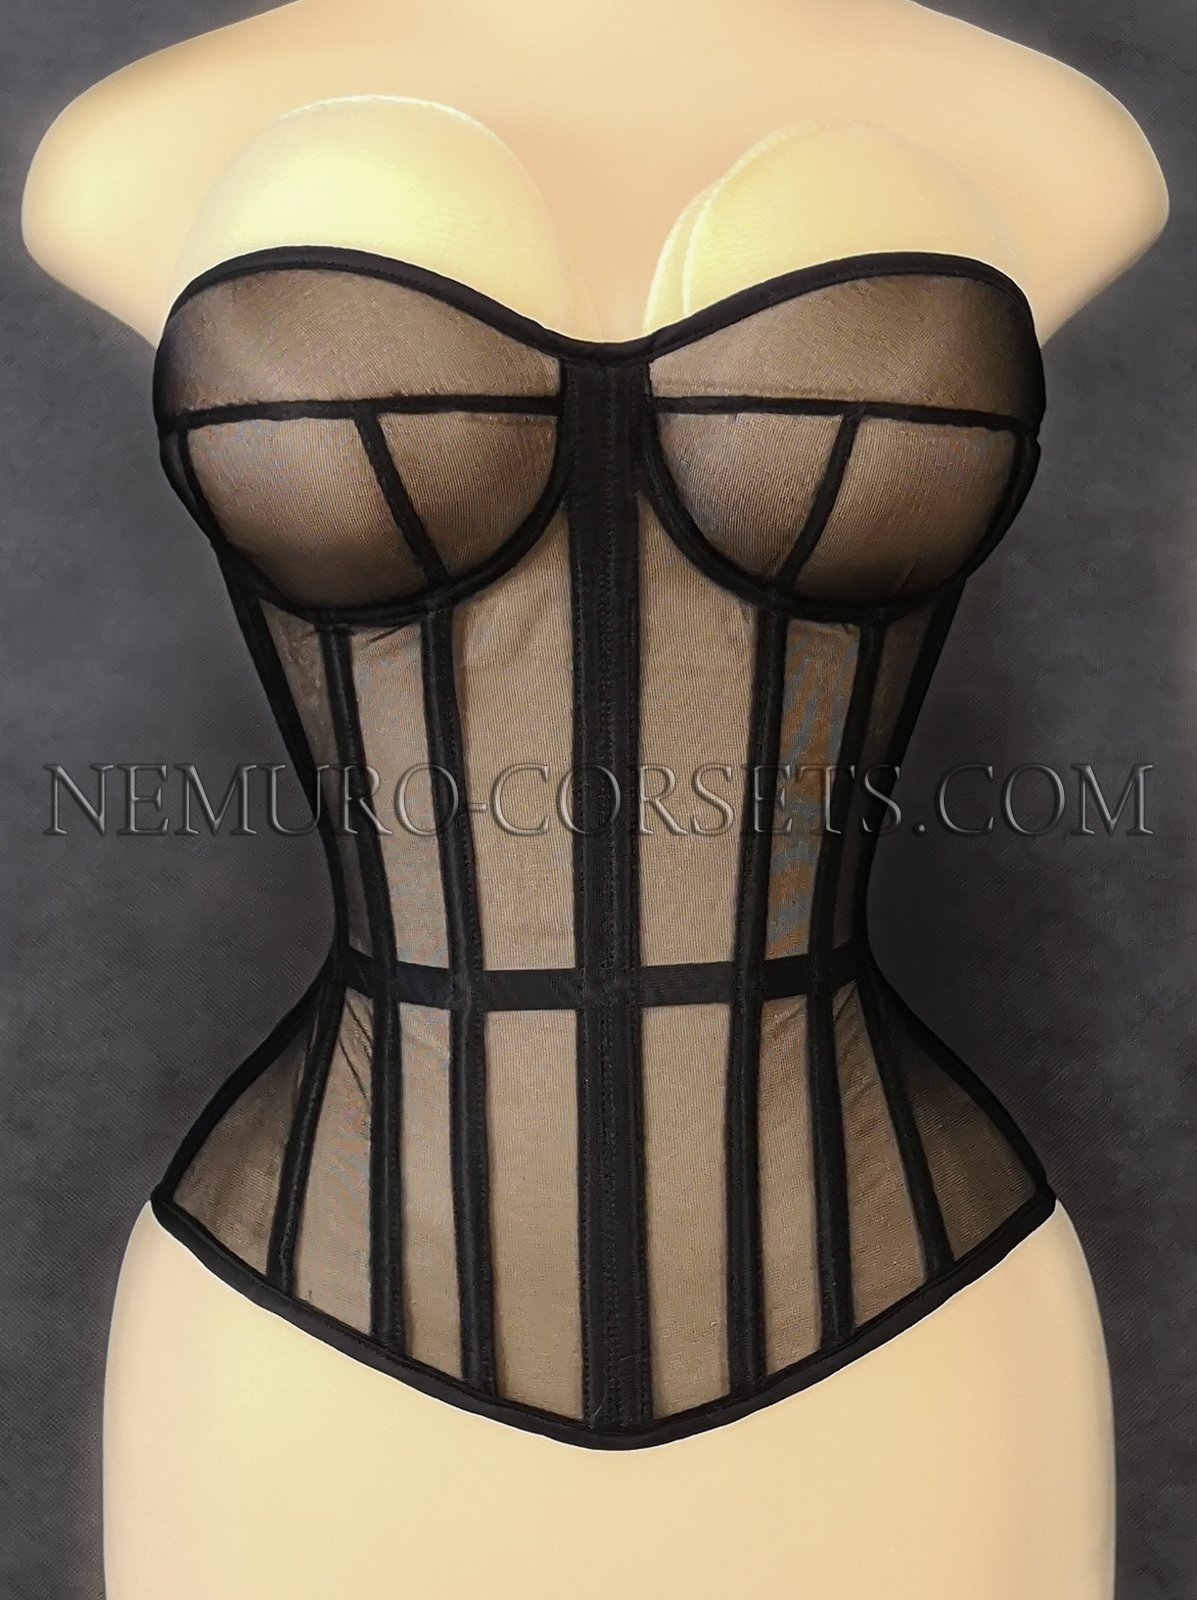 https://nemuro-corsets.com/cdn/shop/products/Img_20200704_131900_1024x1024@2x.jpg?v=1685157644